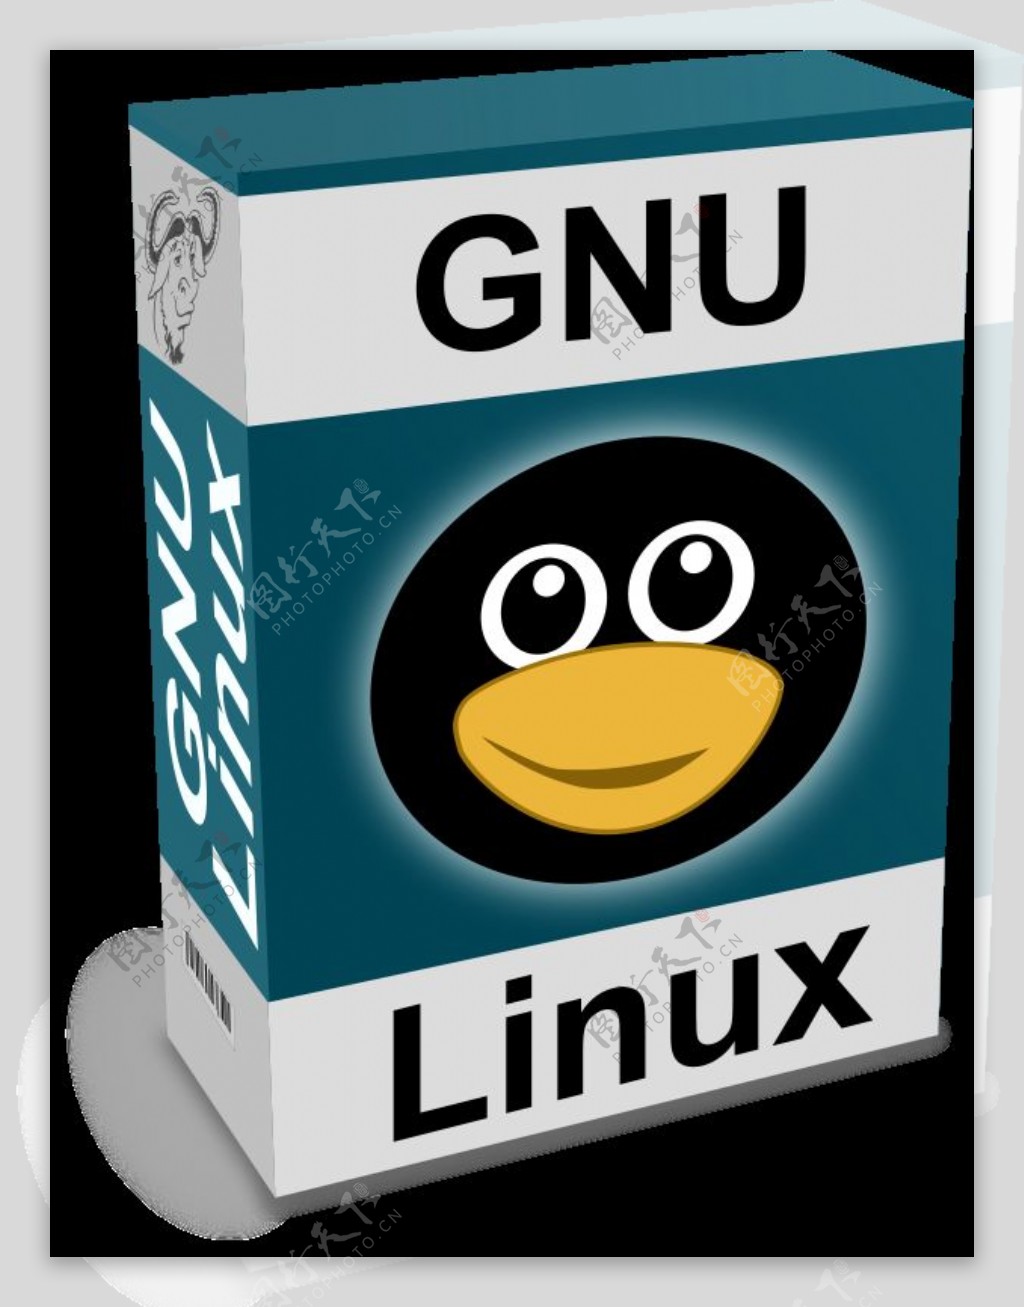 在GNULinux文本和有趣的礼服面向软件纸箱